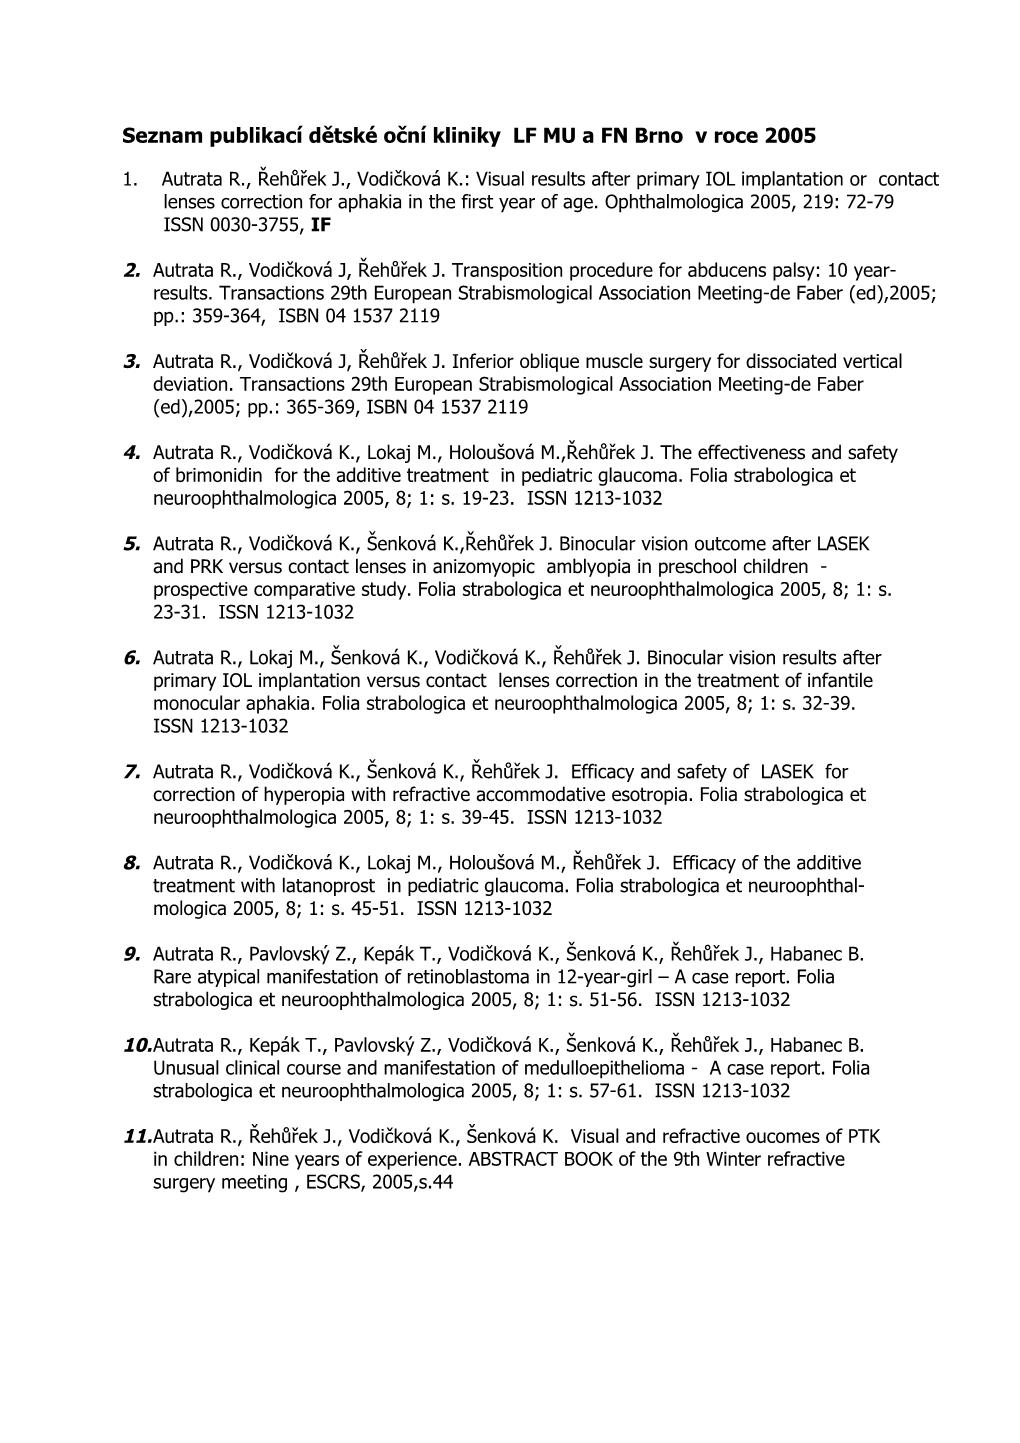 Seznam Publikační Činnosti Dětské Oční Kliniky LF MU a FNB V Roce 2004